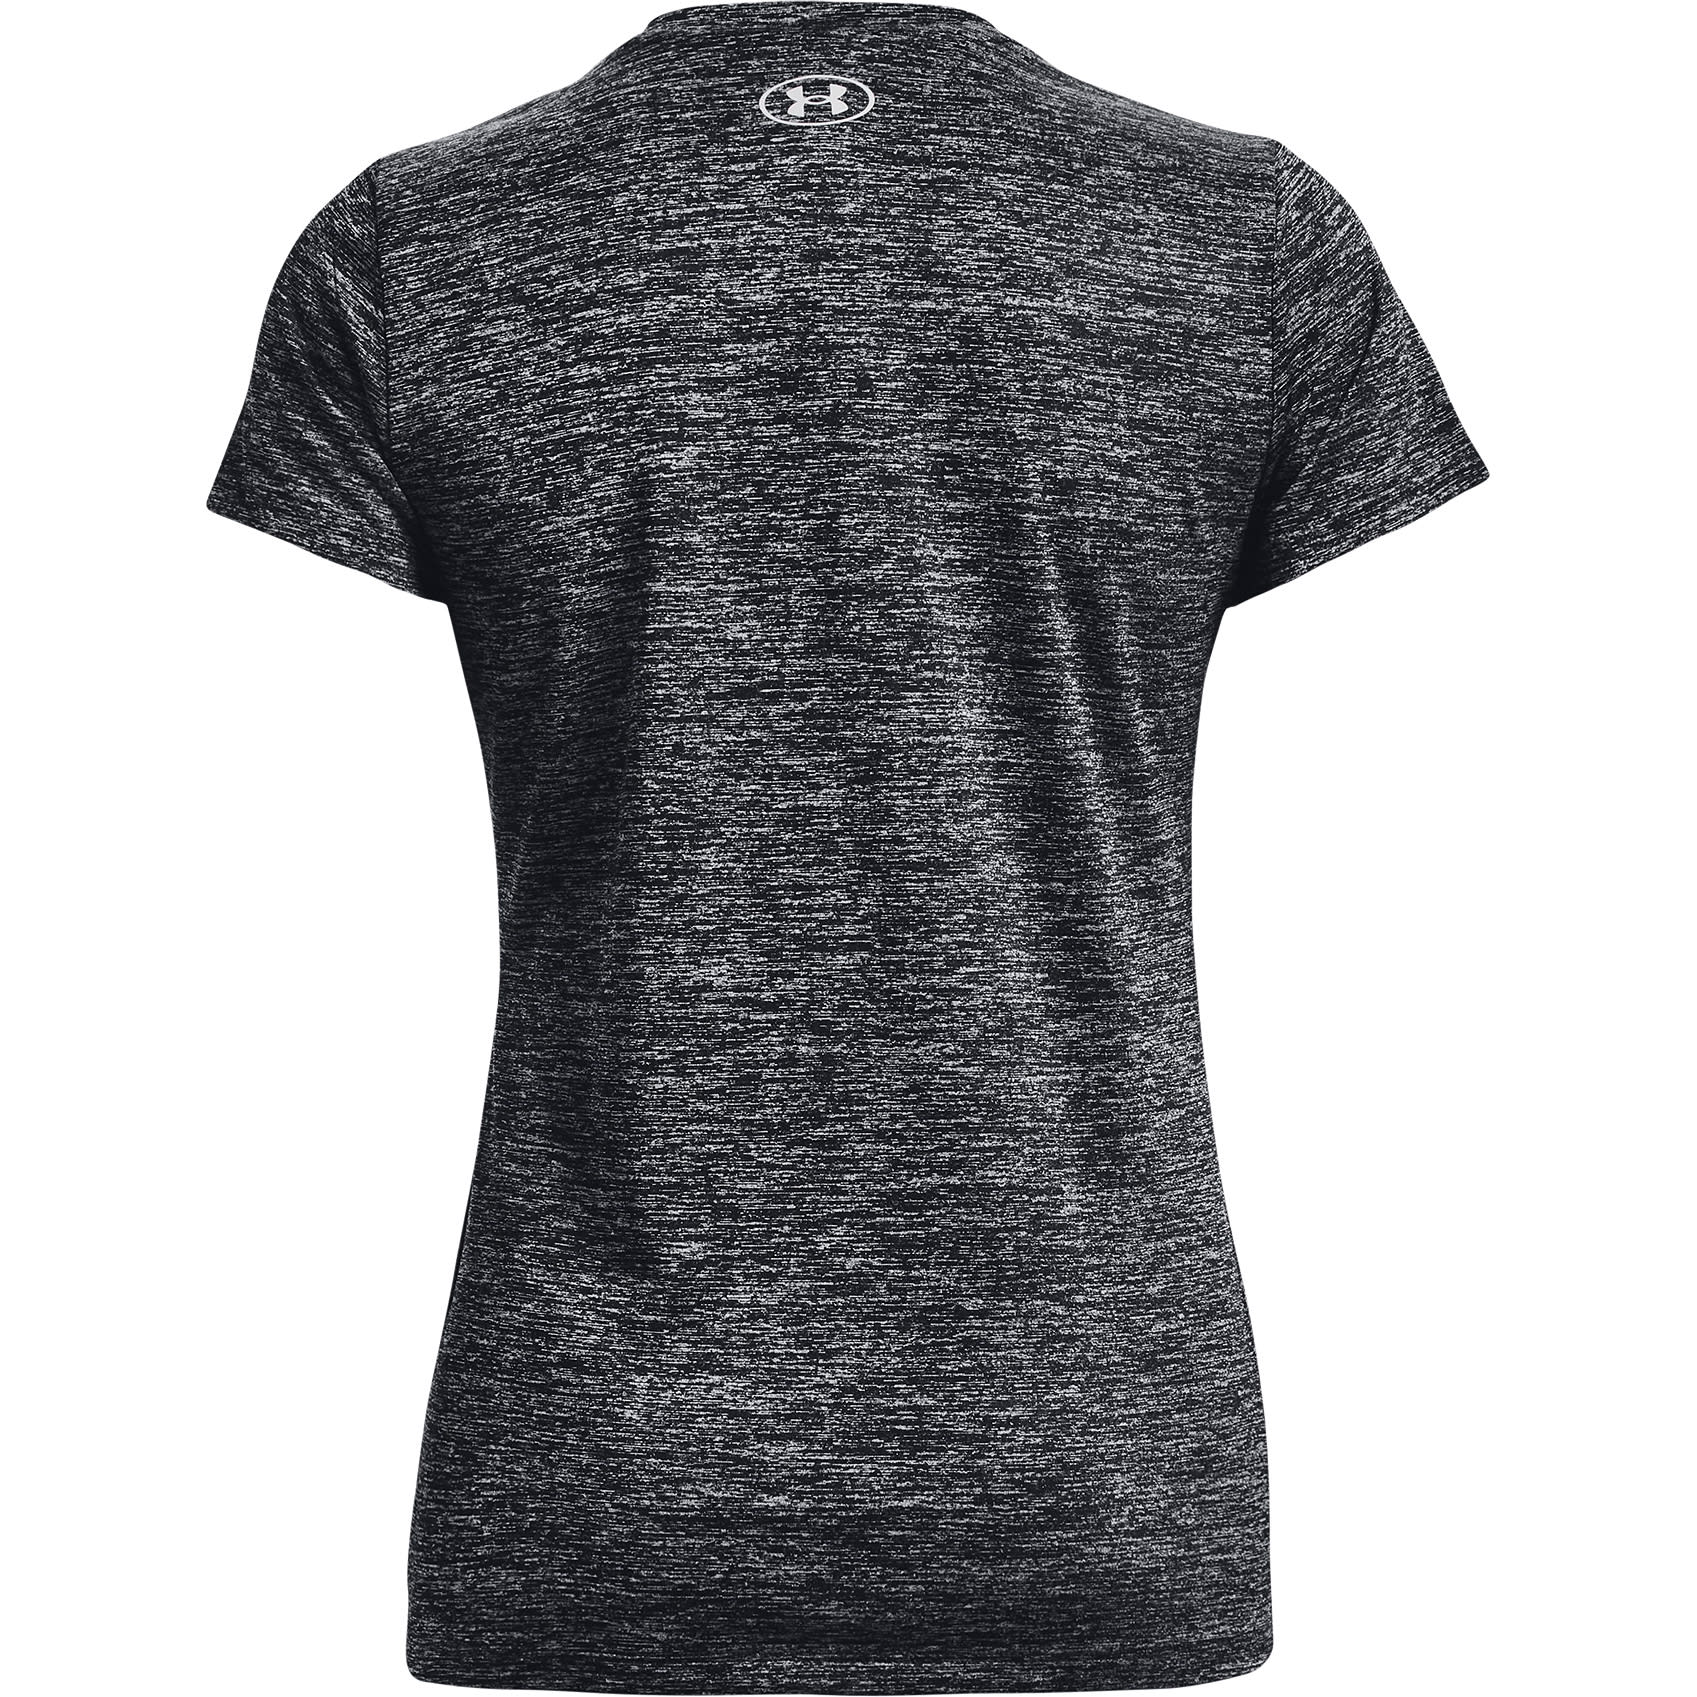 Under Armour UA Tech™ Twist V-Neck Short Sleeve Shirt Women